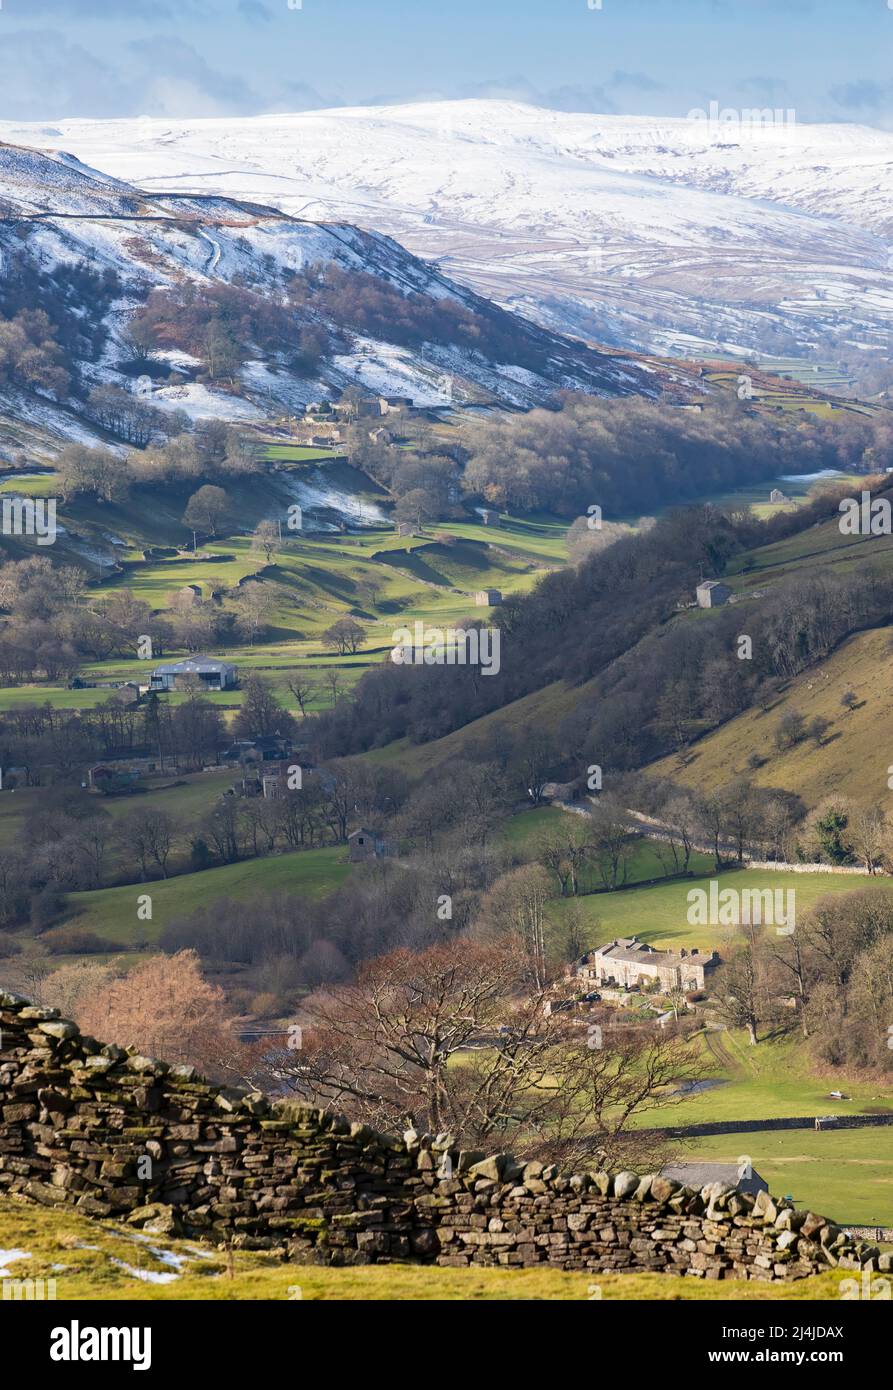 Swaledale, Yorkshire Dales National Park, colline coperte di neve sopra un mosaico di pareti di pietra asciutta fiancheggiata da campi e pascoli con iconiche fienili in pietra Foto Stock